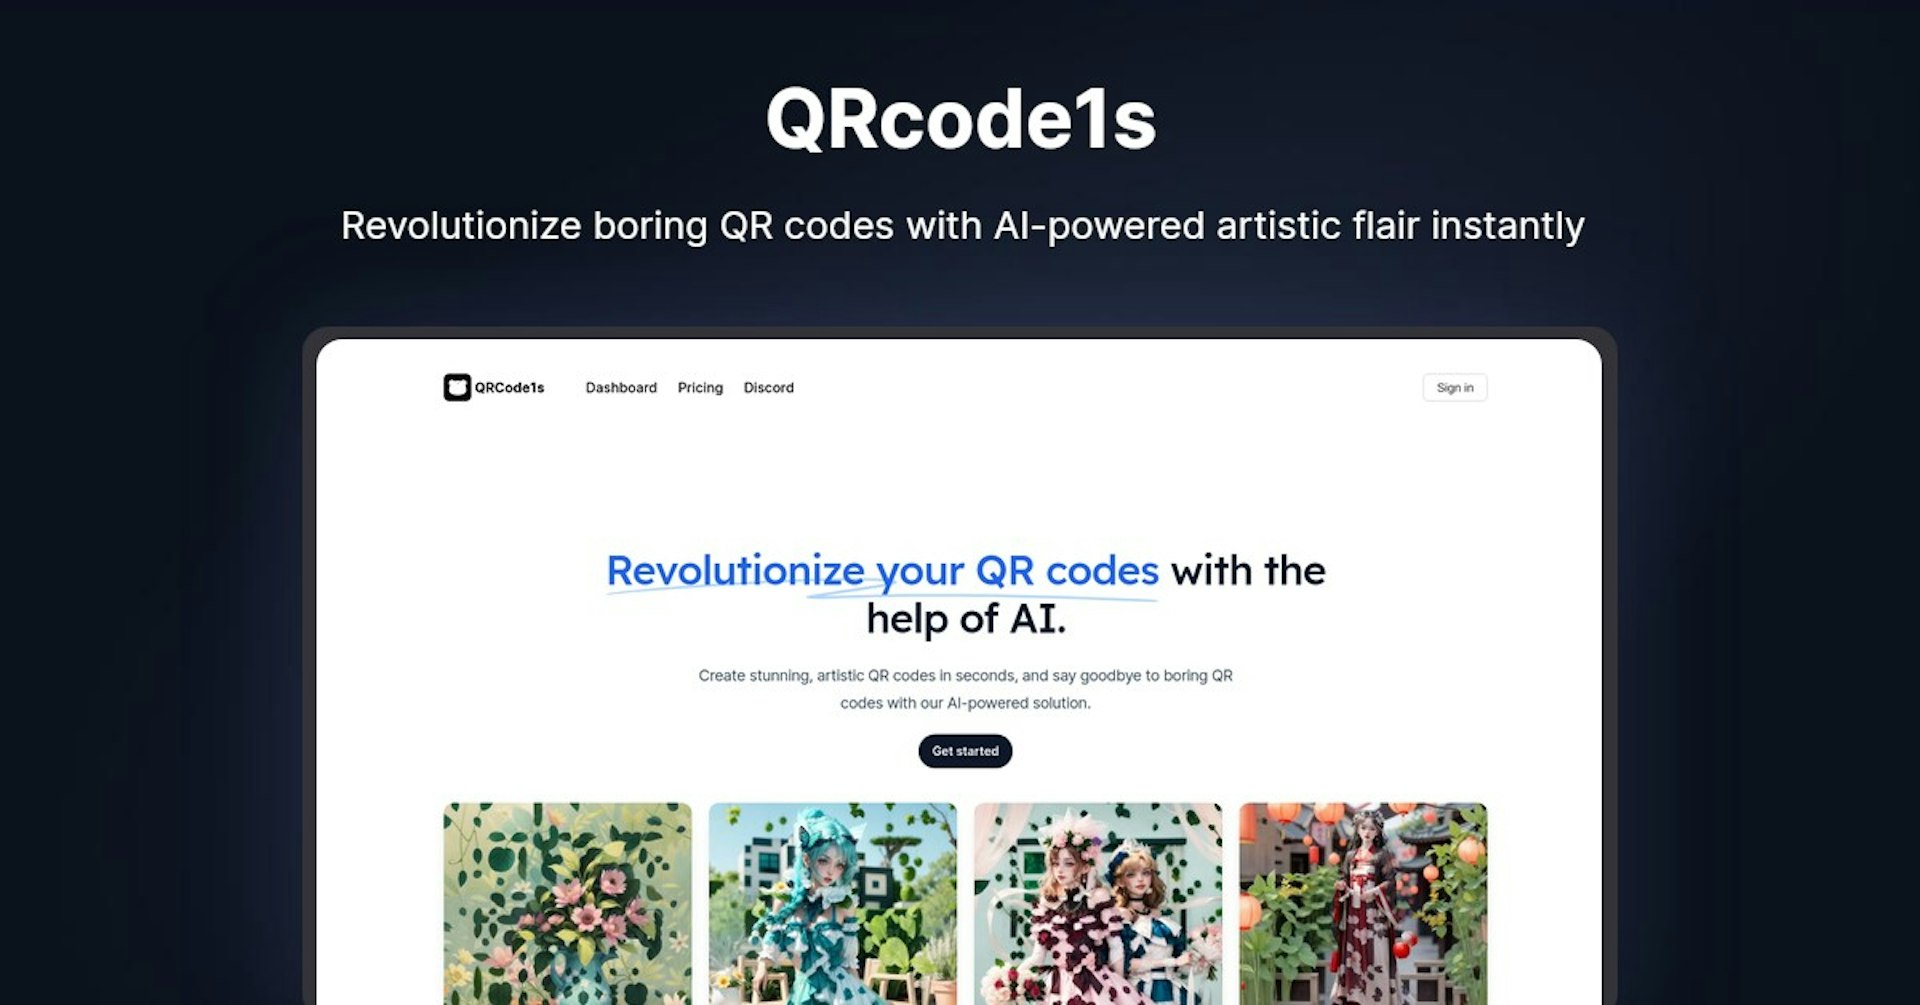 QRcode1s